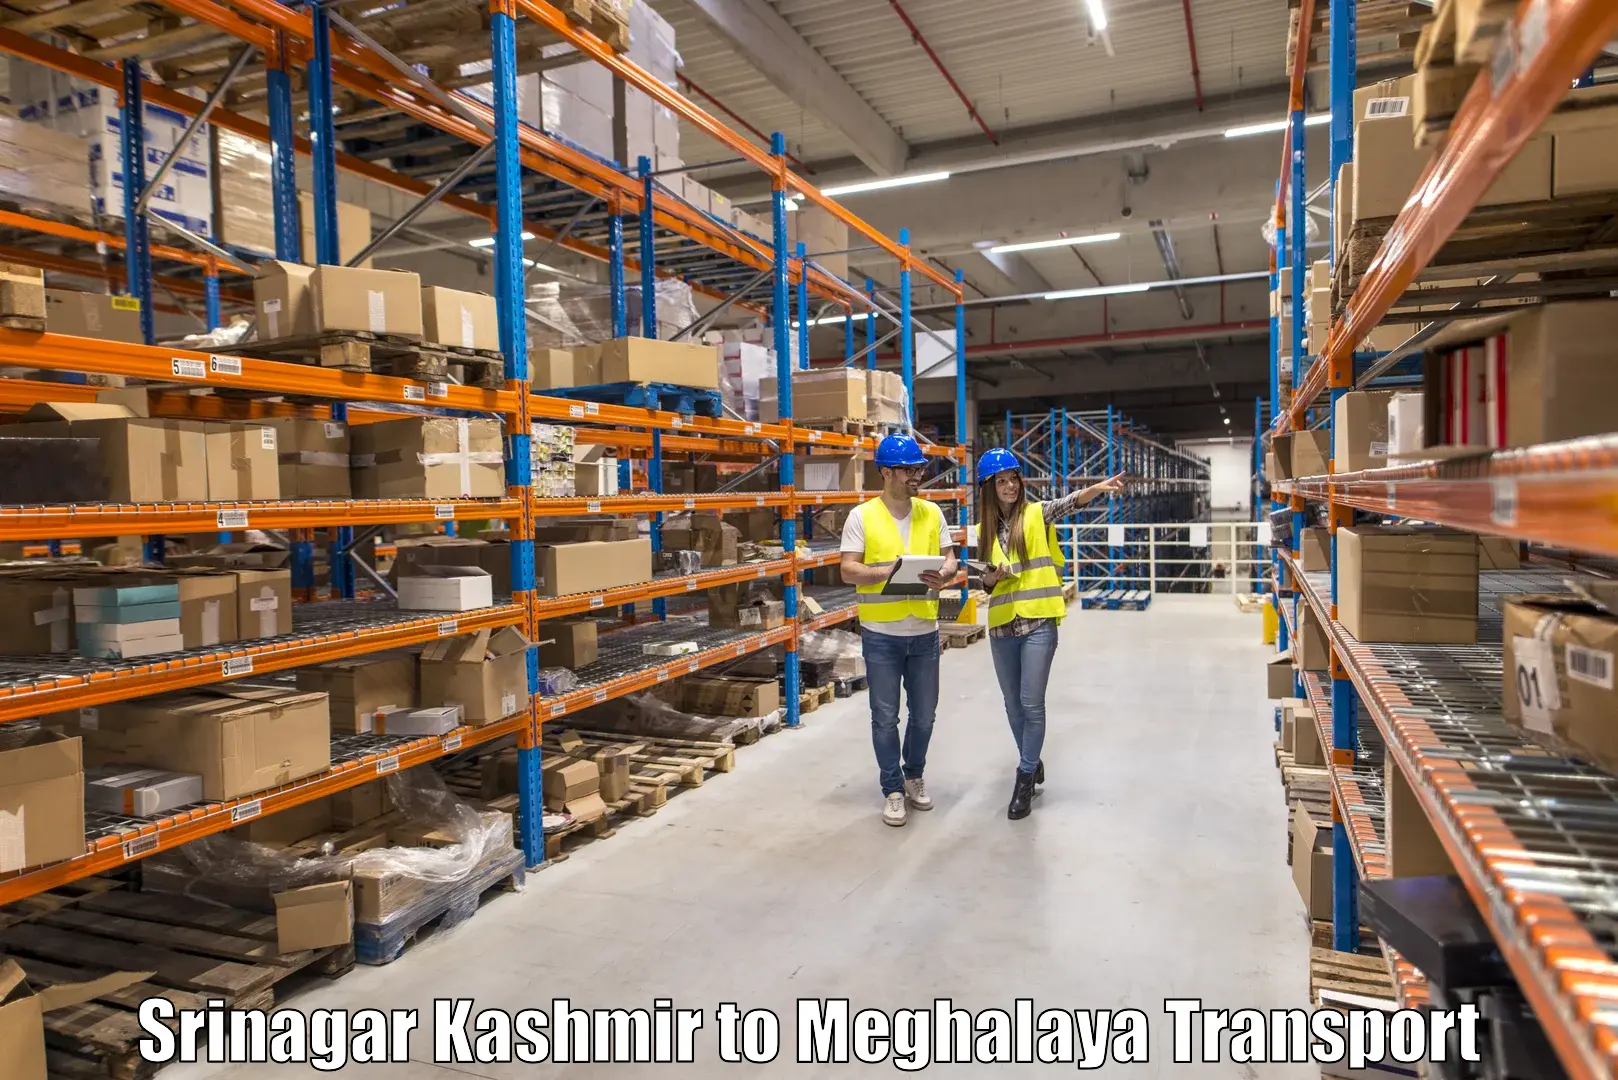 Bike shipping service Srinagar Kashmir to Meghalaya